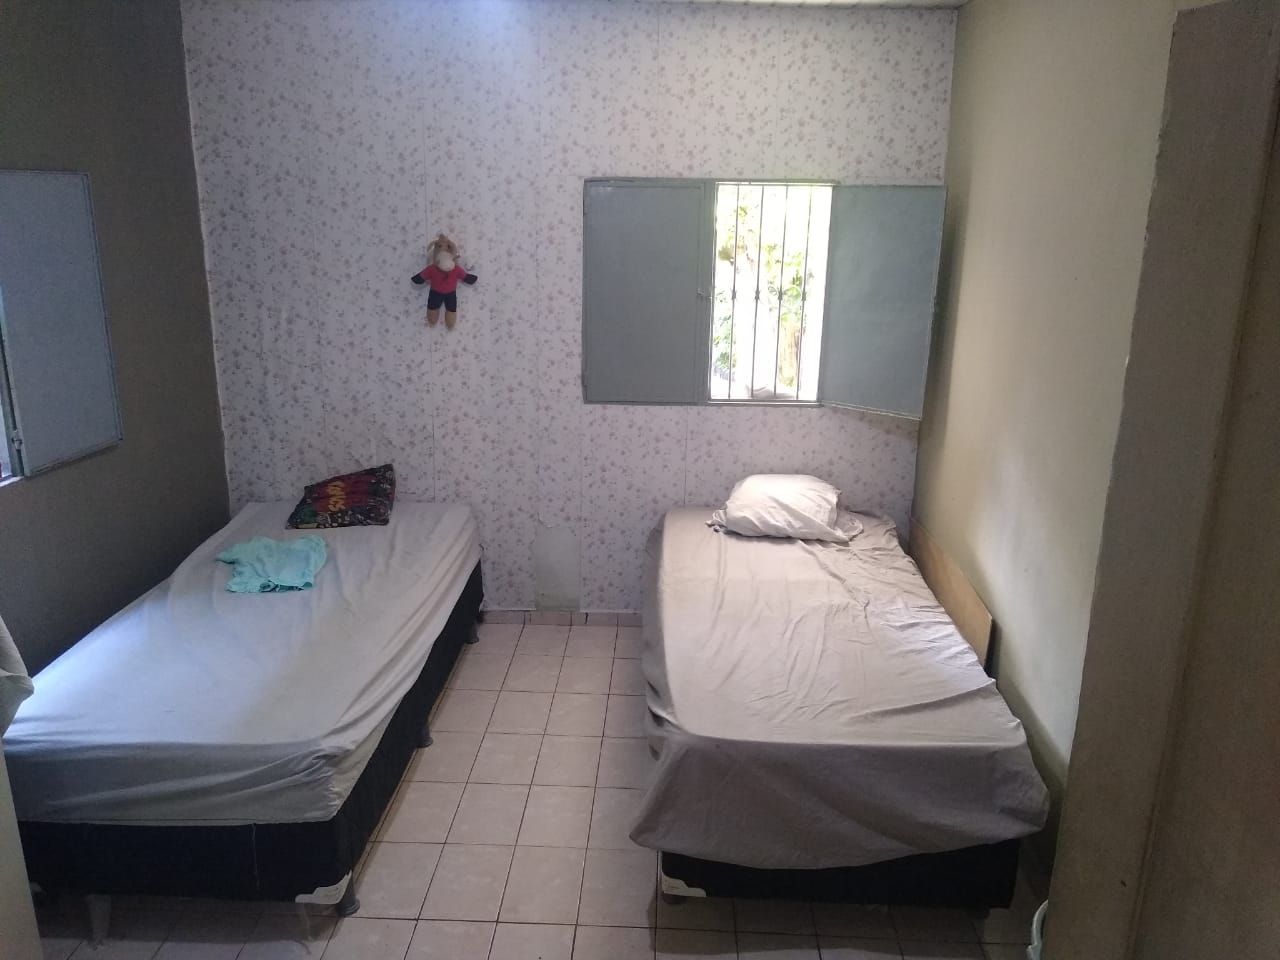 Casa com 3 dormitórios à venda, 100 m² por RS 200.000 - Santo Agostinho - Manaus-AM